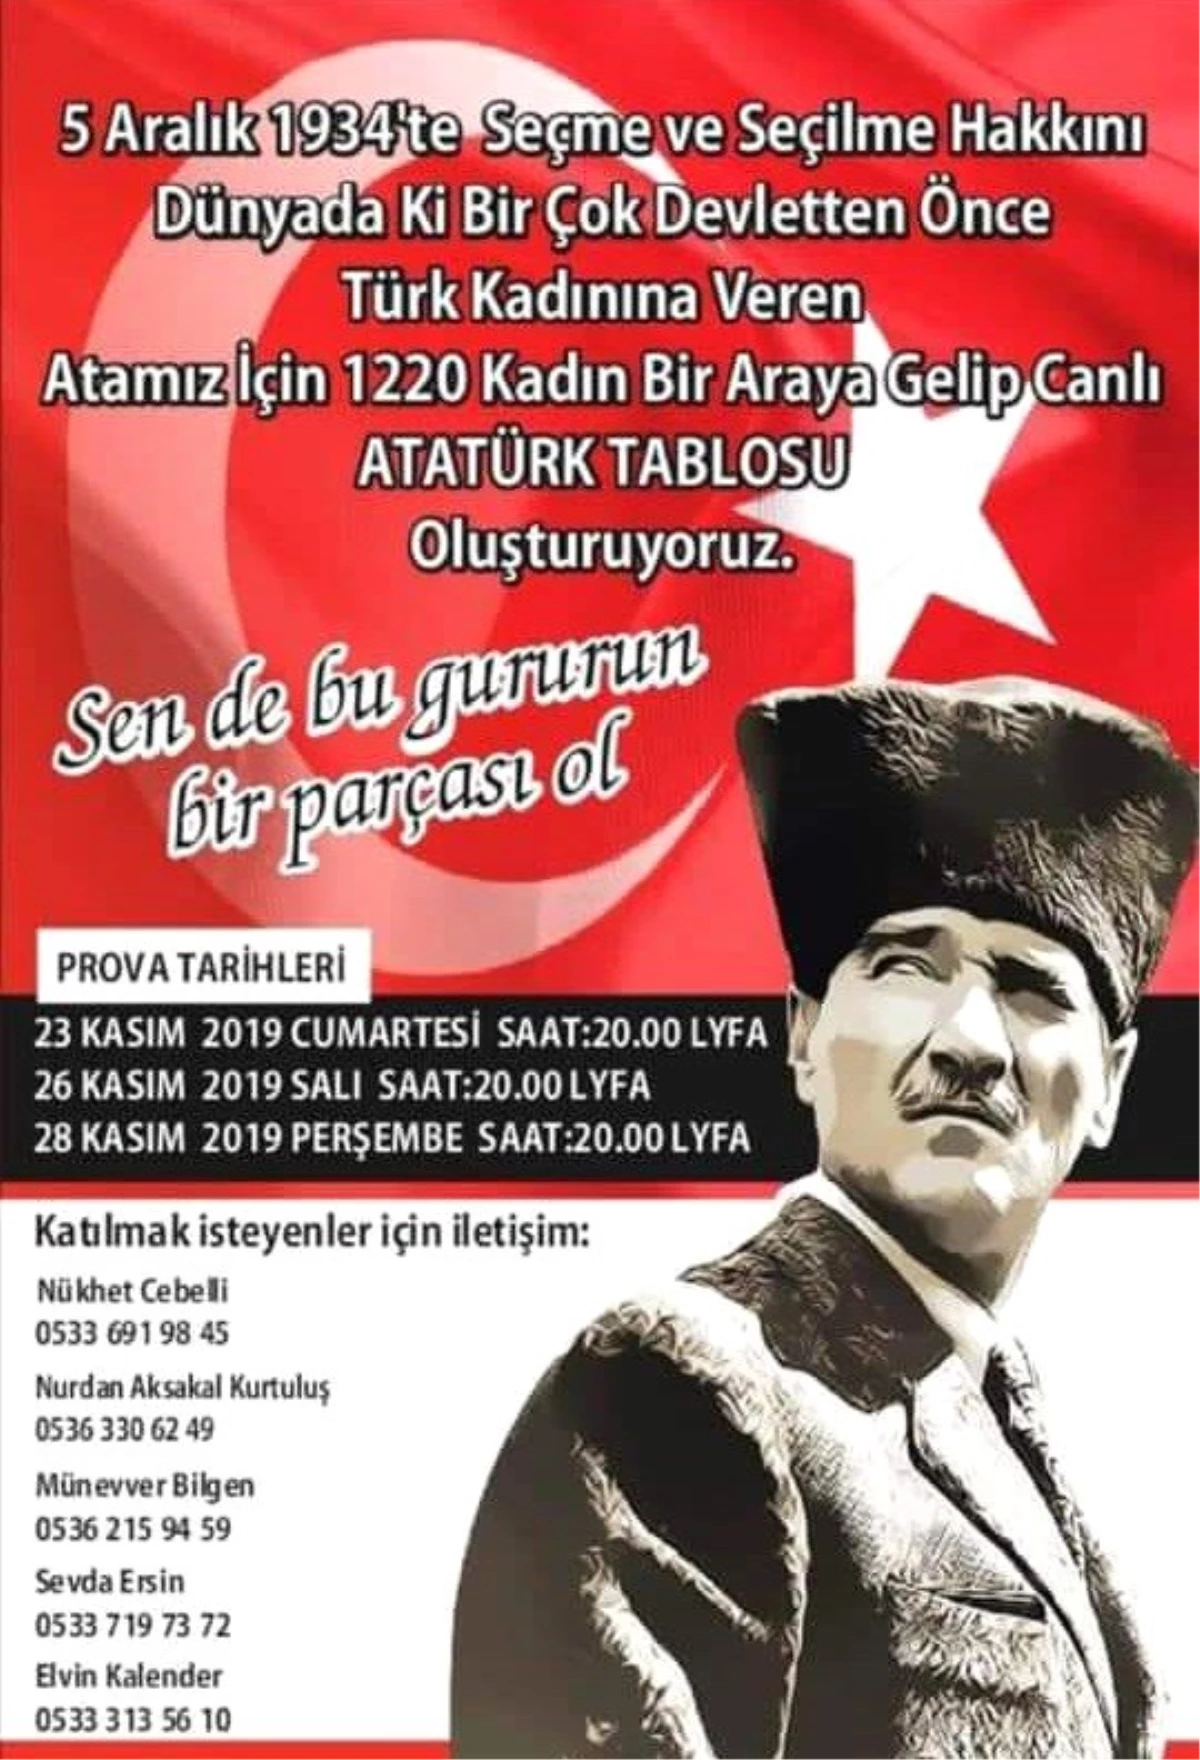 1220 kadın Atatürk portresi oluşturacak